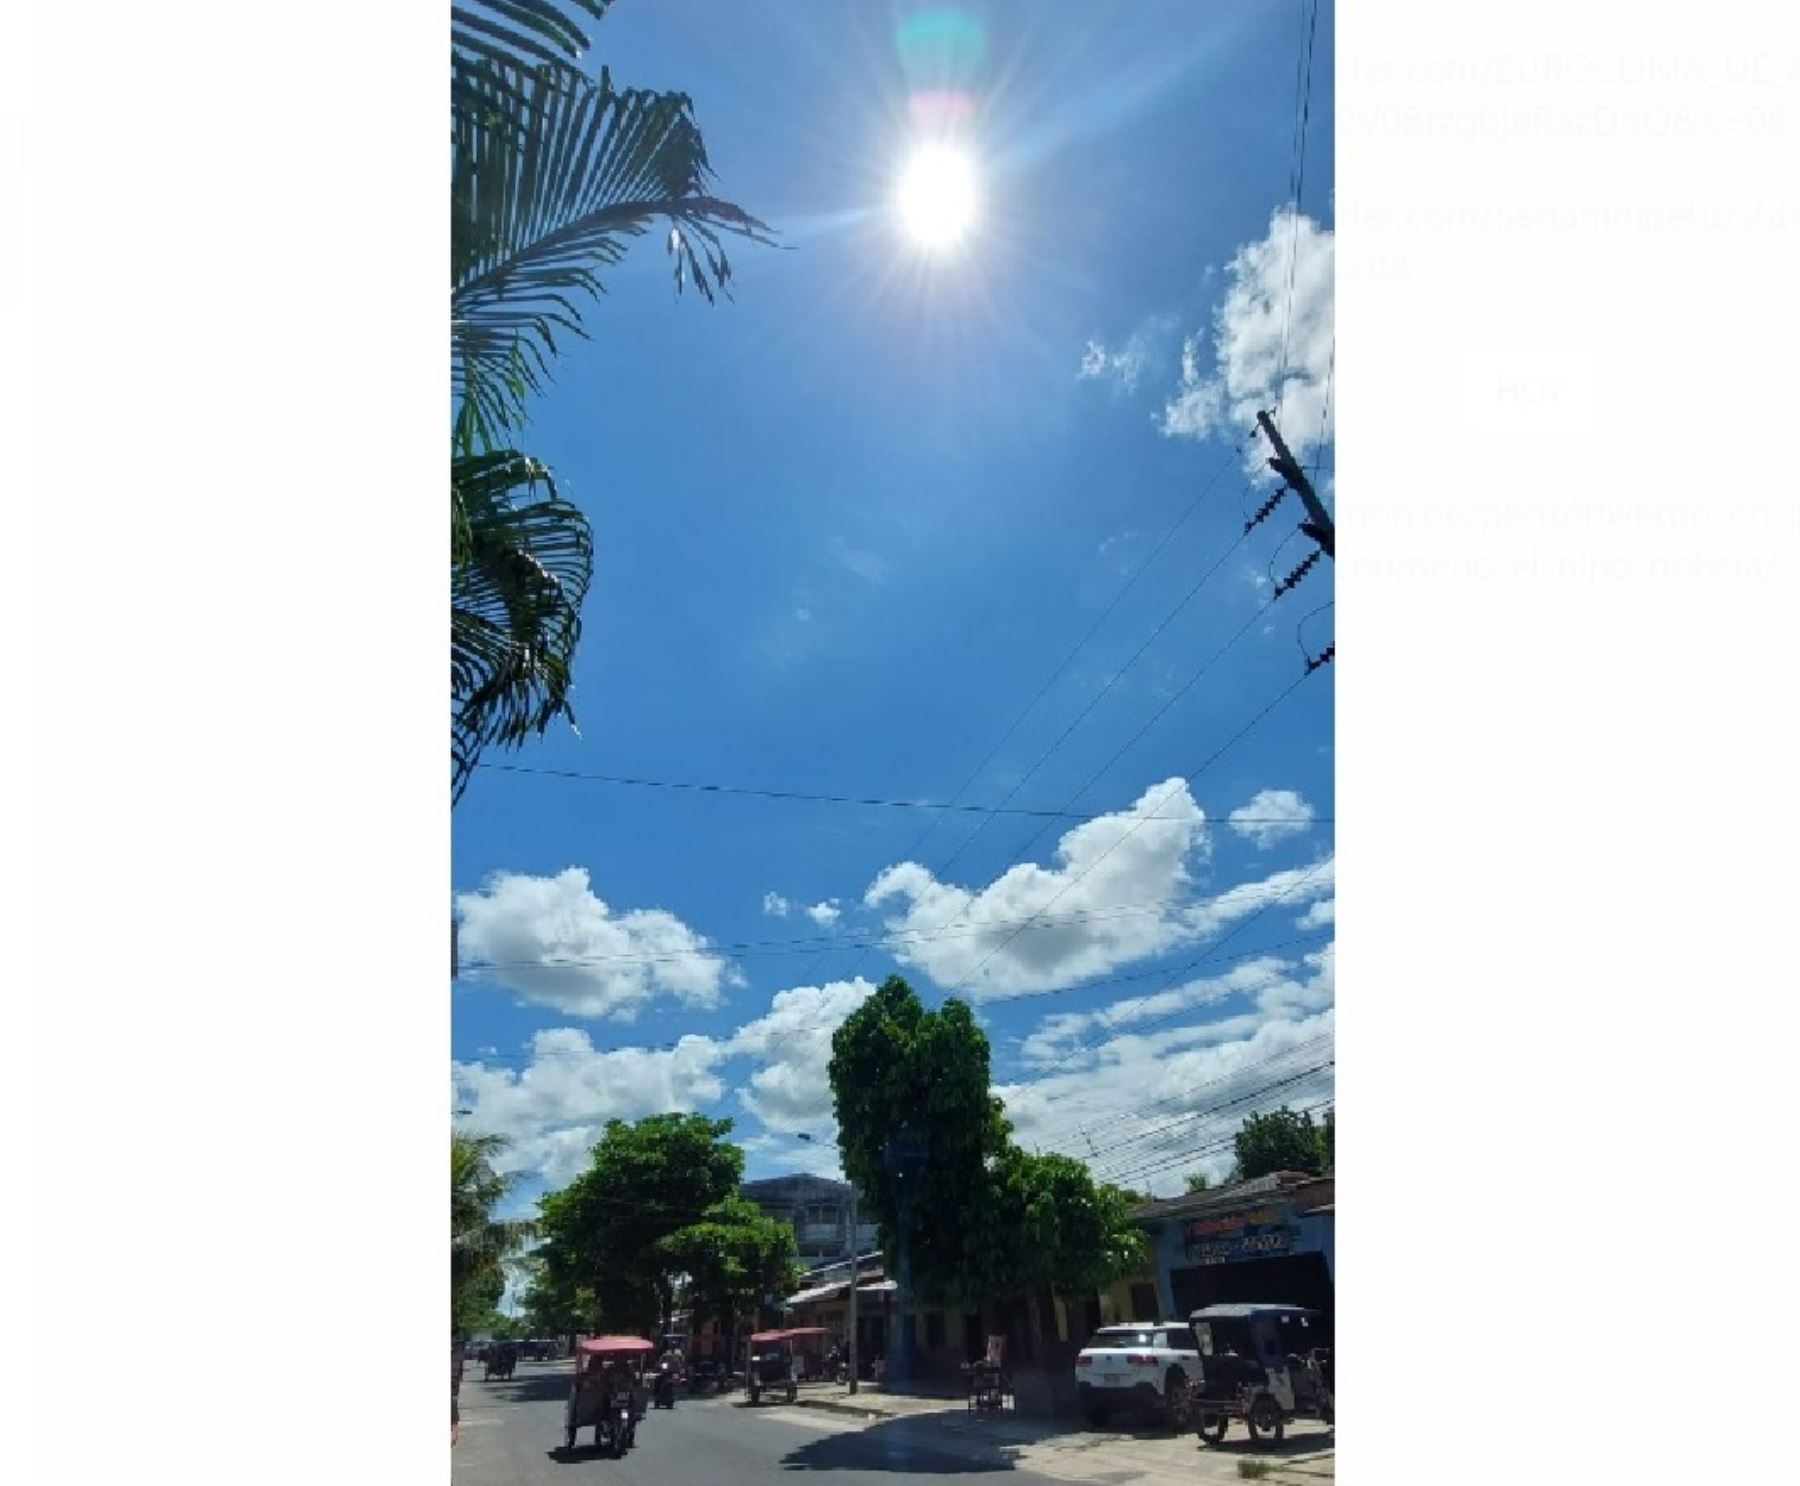 La ciudad de Iquitos soporta un periodo de fuerte calor y la temperatura llega a picos de 36° C y la sensación térmica alcanza los 42 grados. Foto: Elvis Noronha